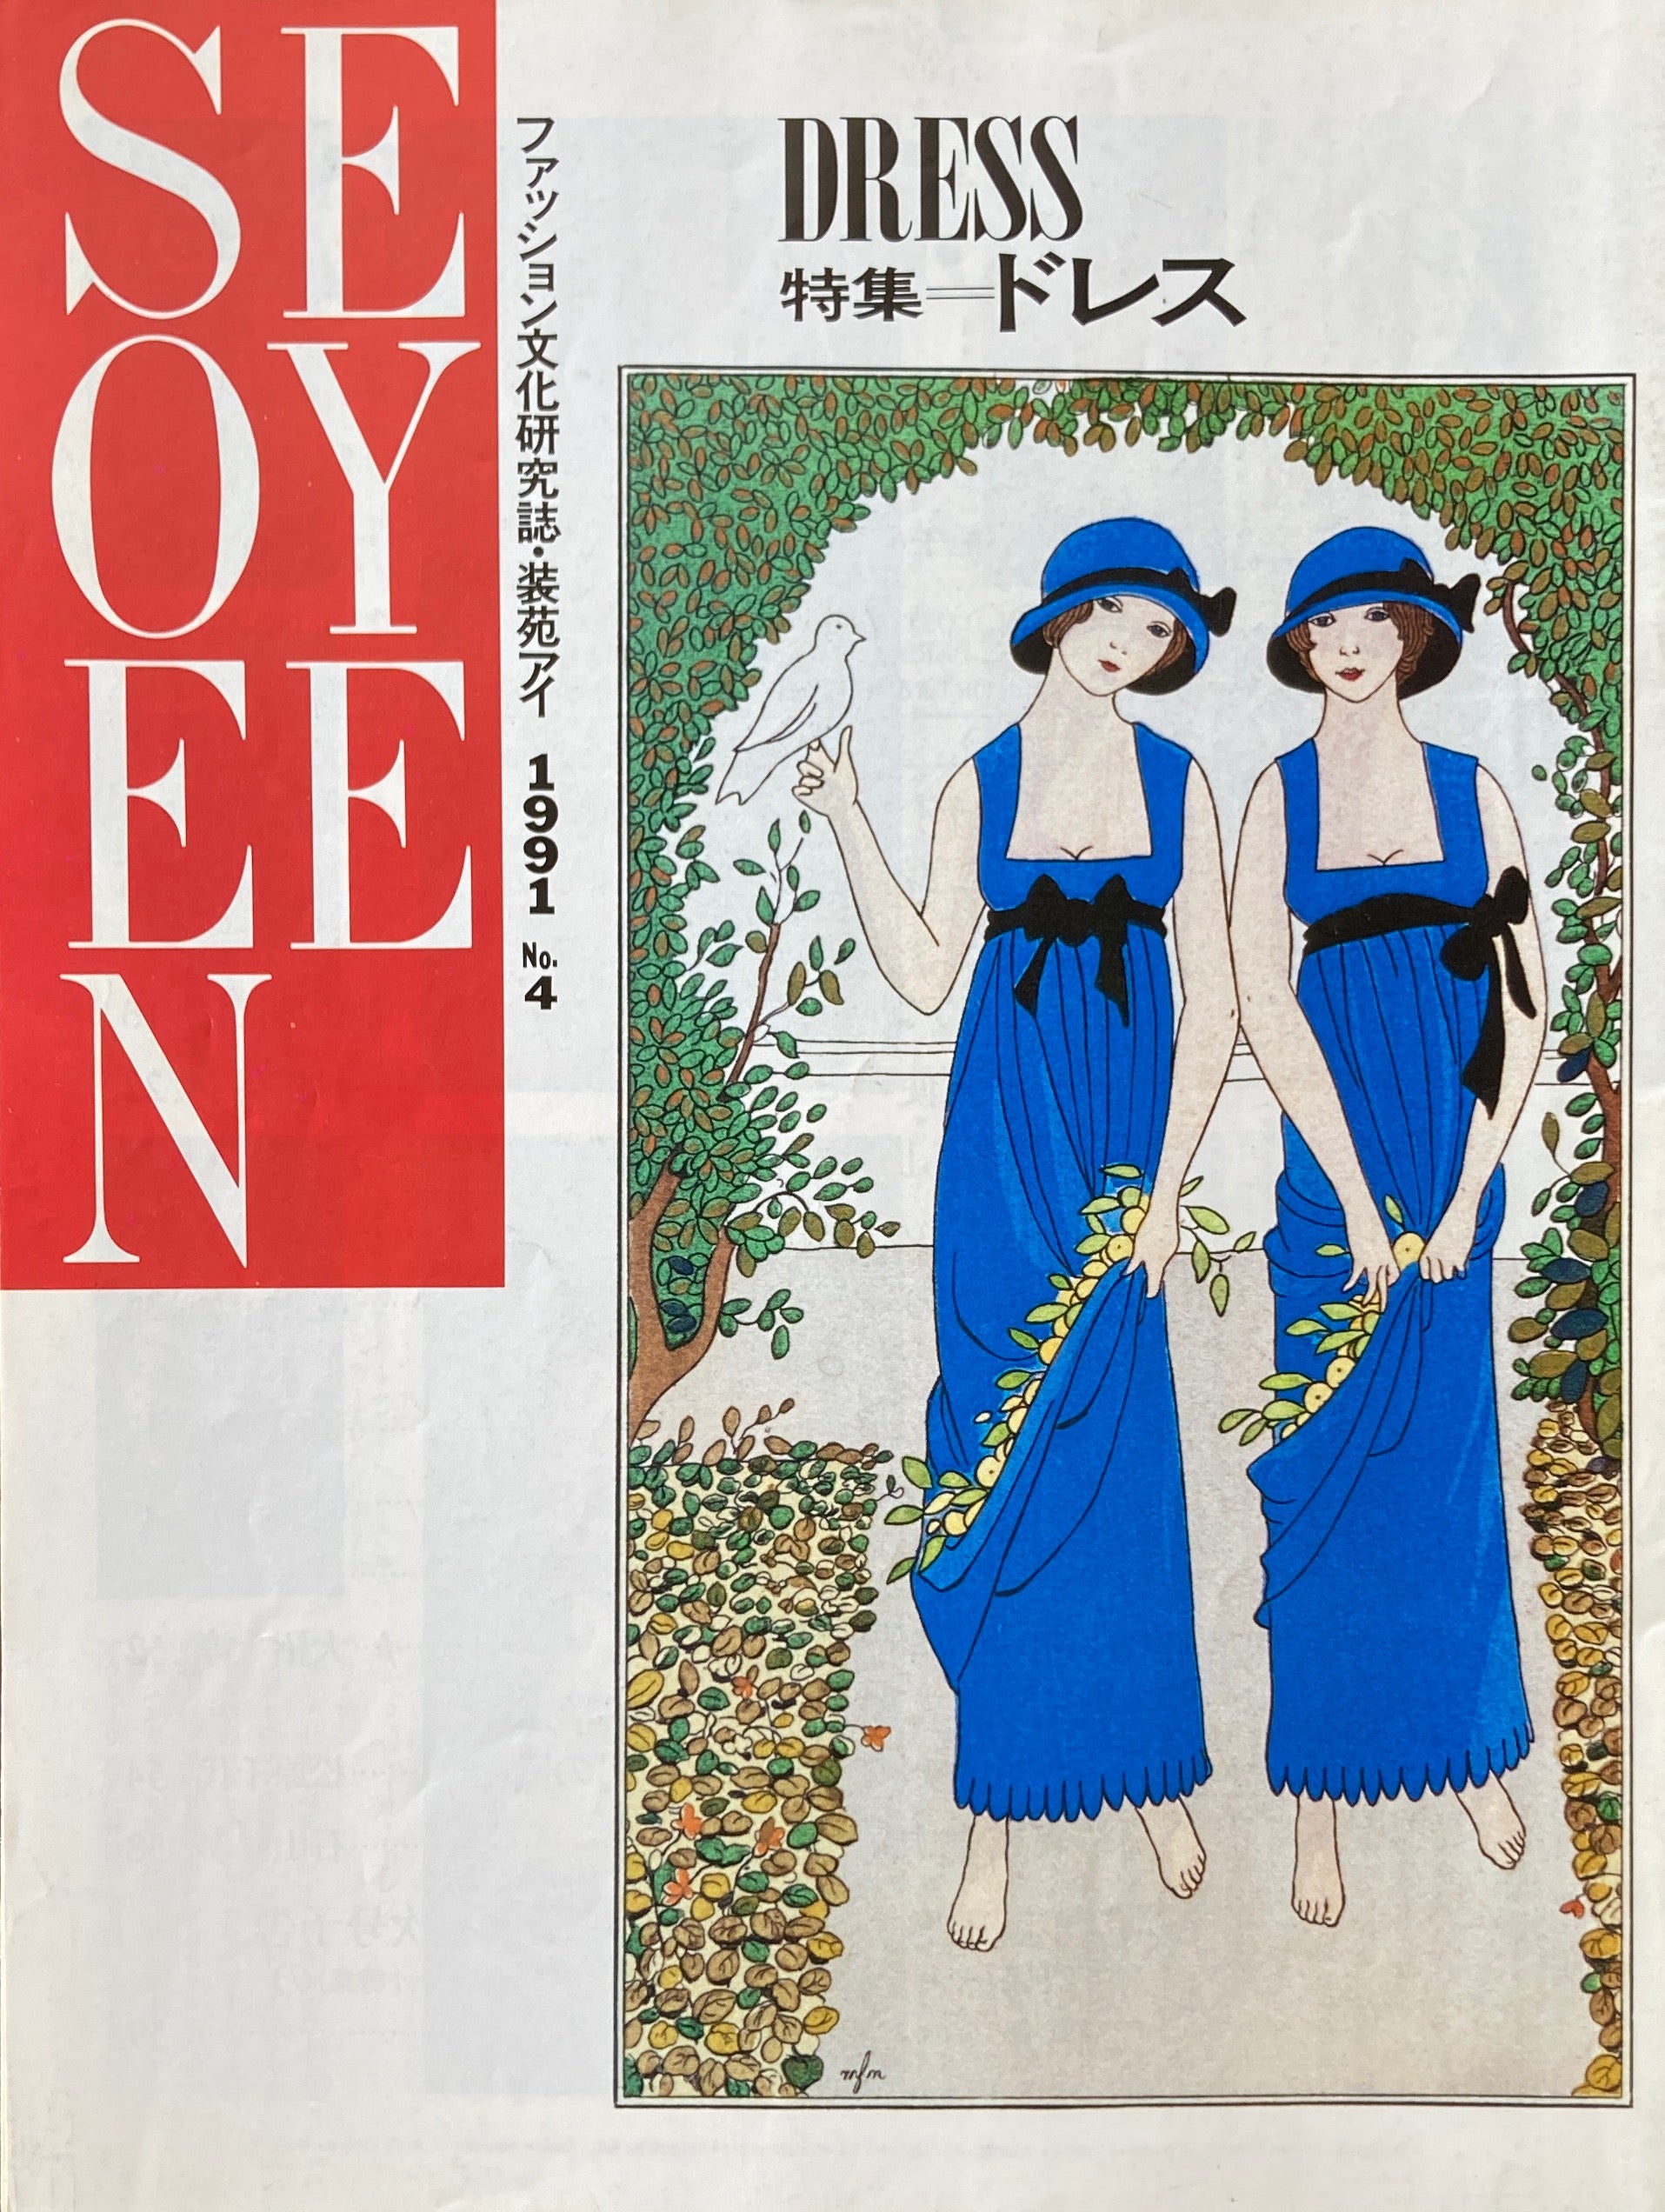 装苑 1951年 昭和 雑誌 女性誌 ファッション誌 - 雑誌